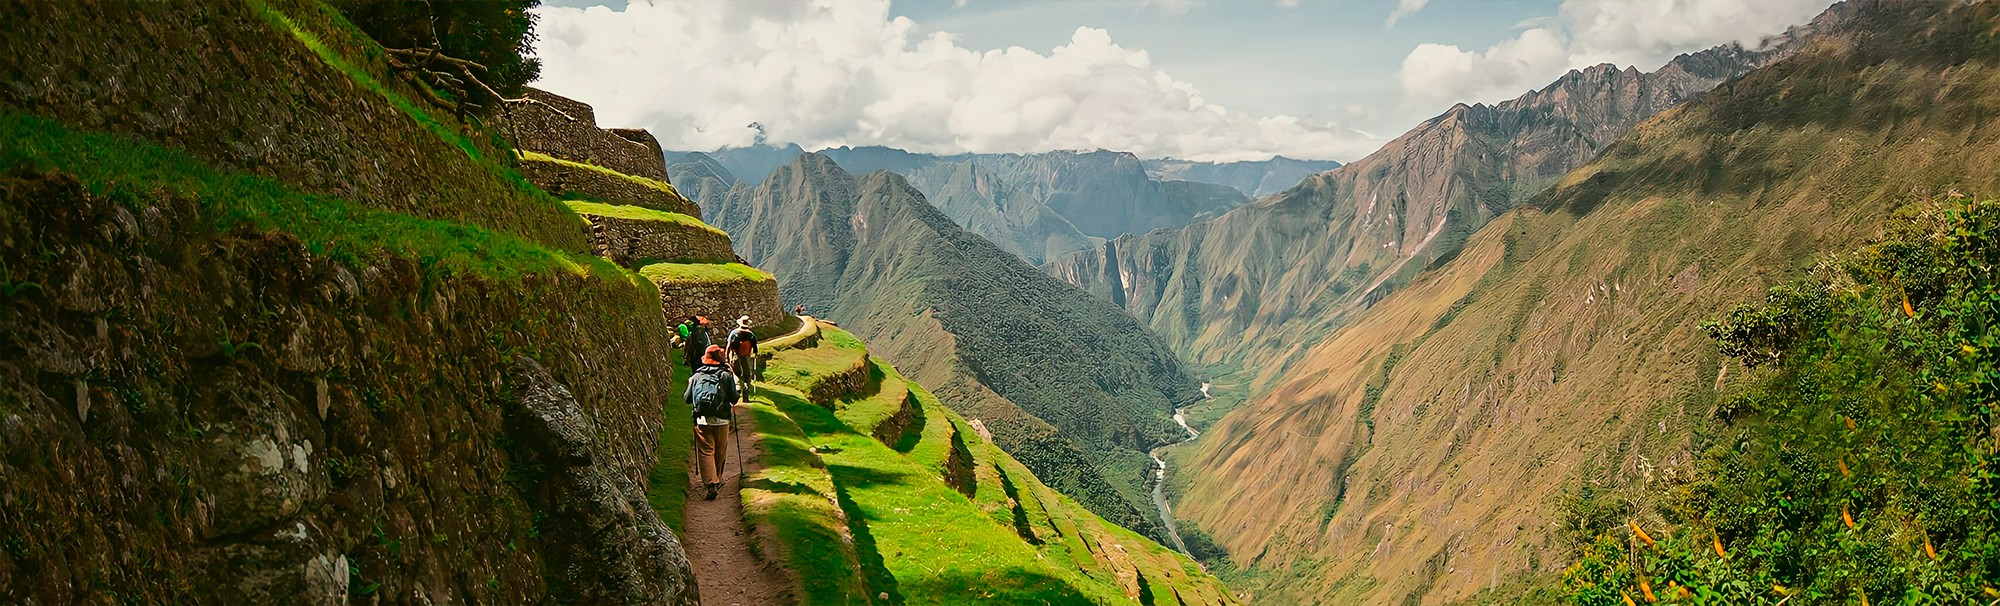 Trilha Inca Machu Picchu